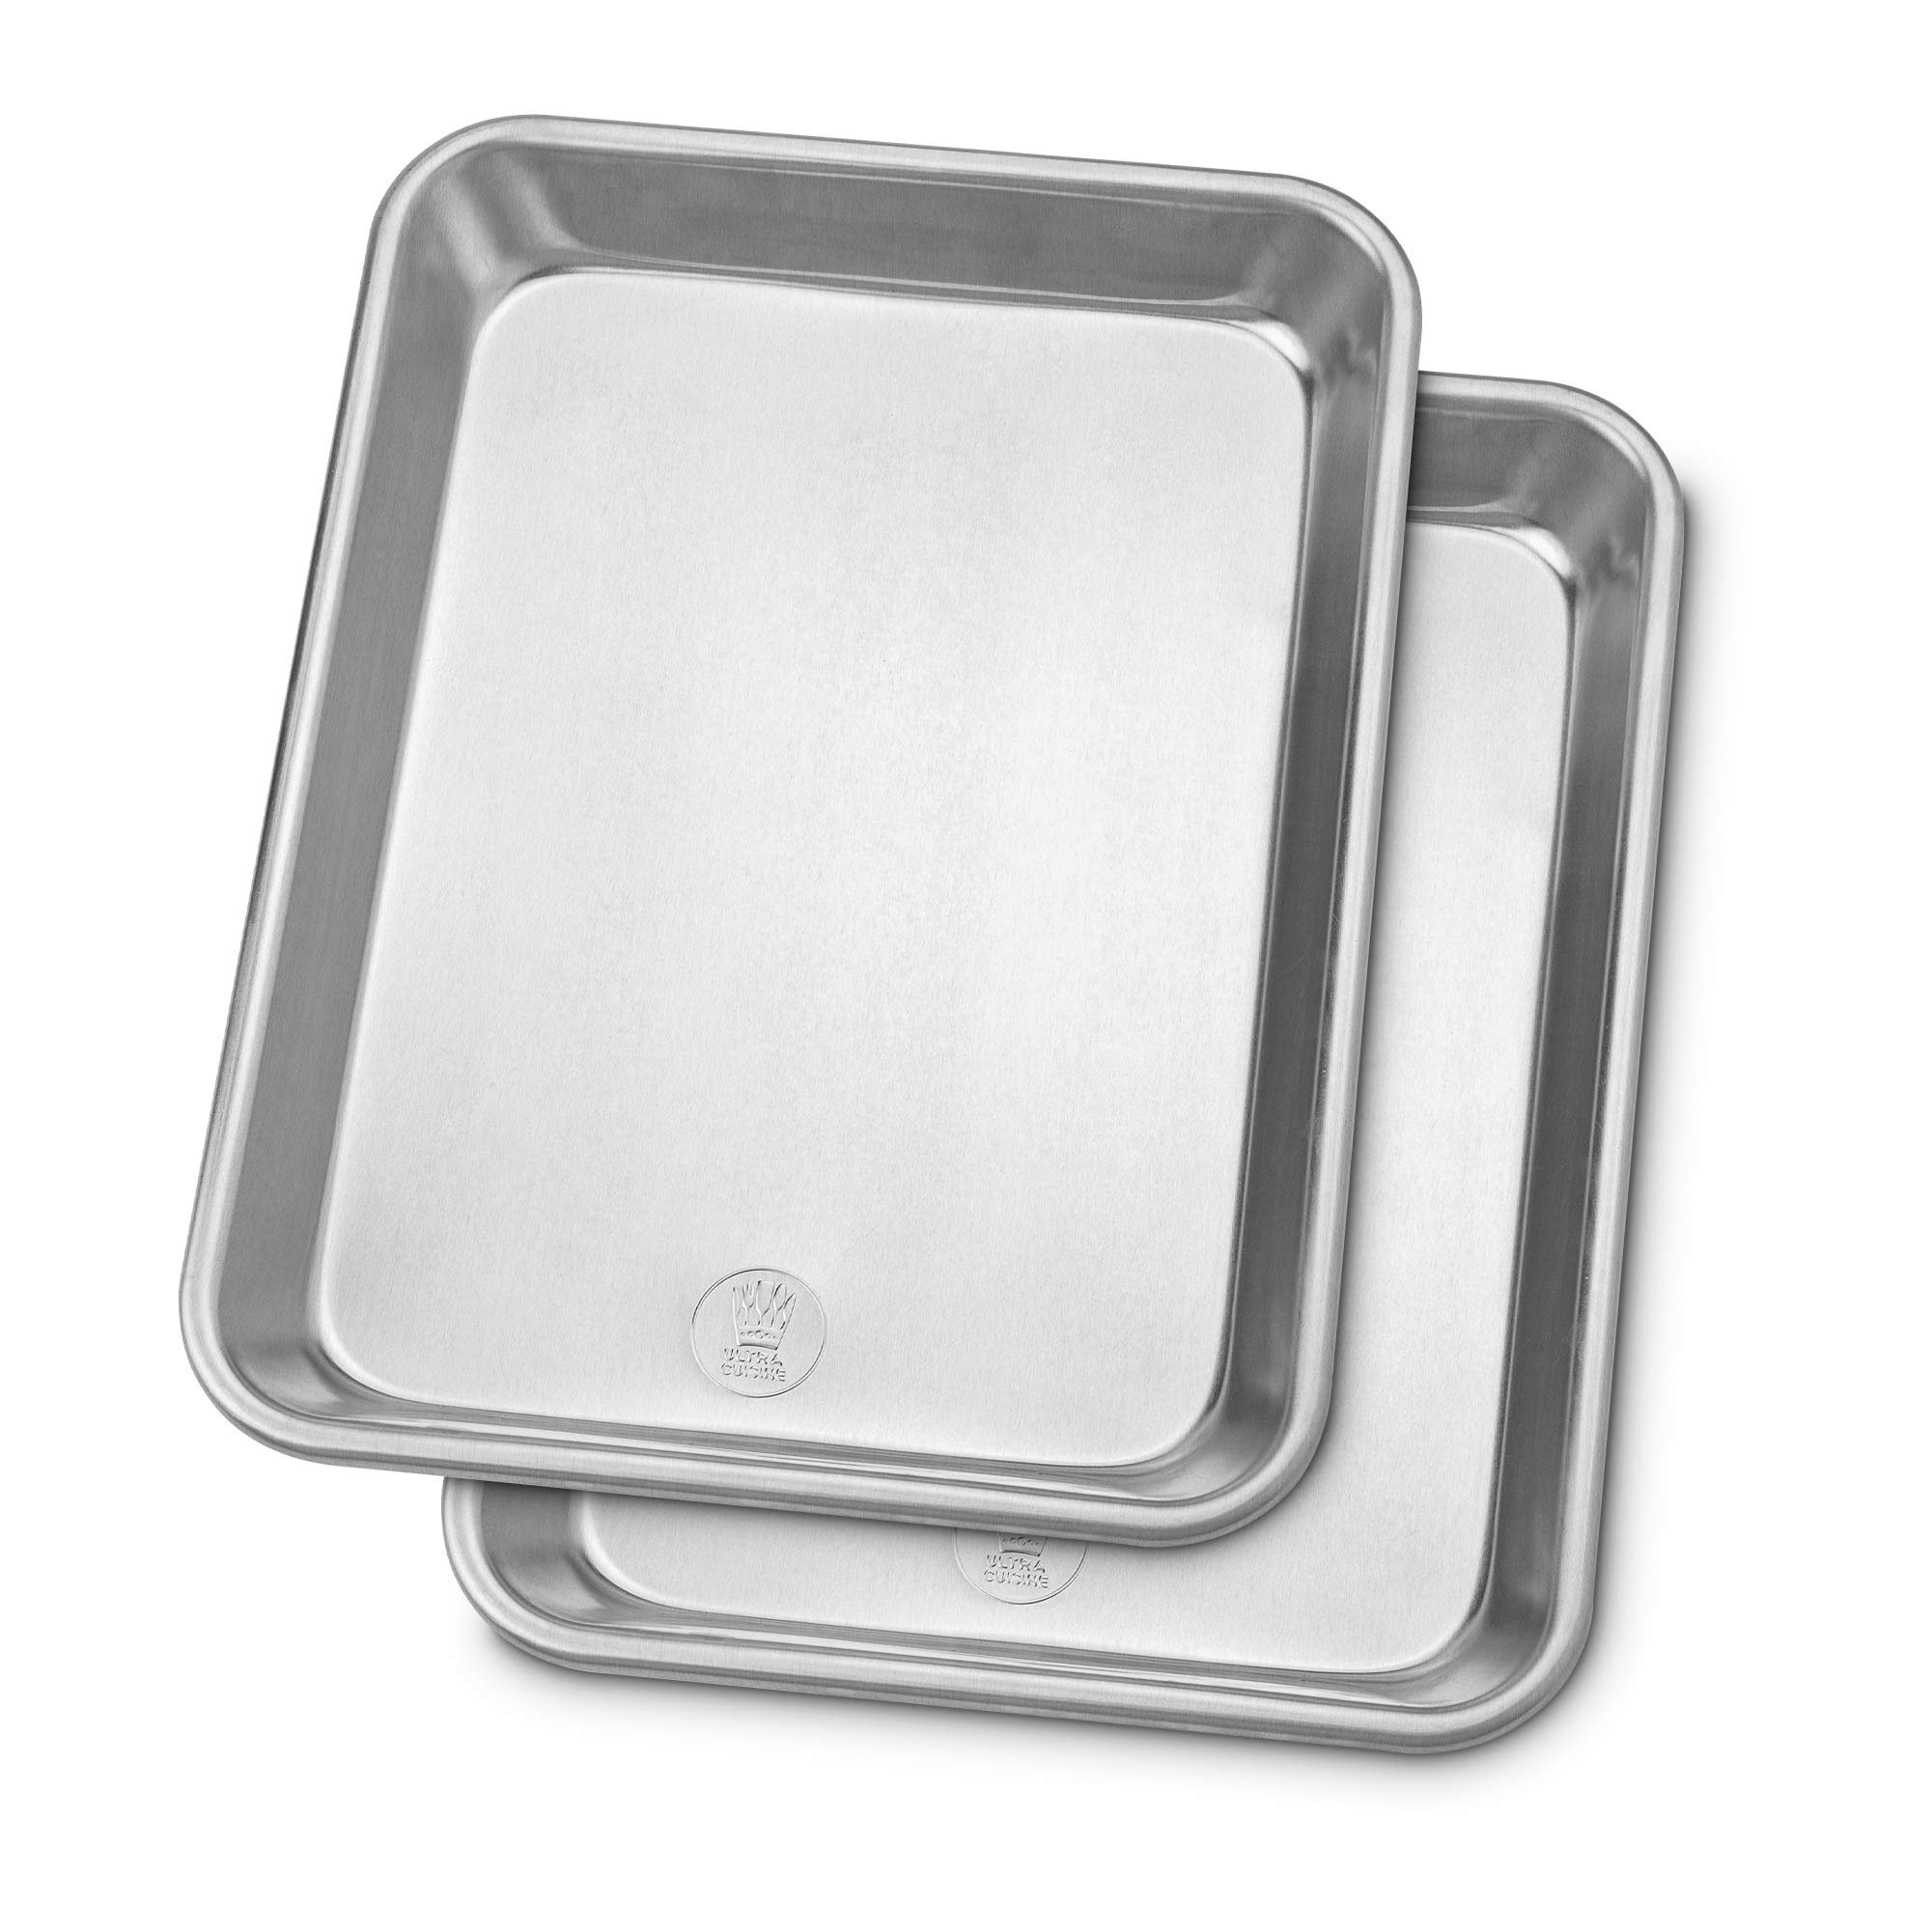 Ultra Cuisine oven-safe baking pan with cooling rack set - quarter